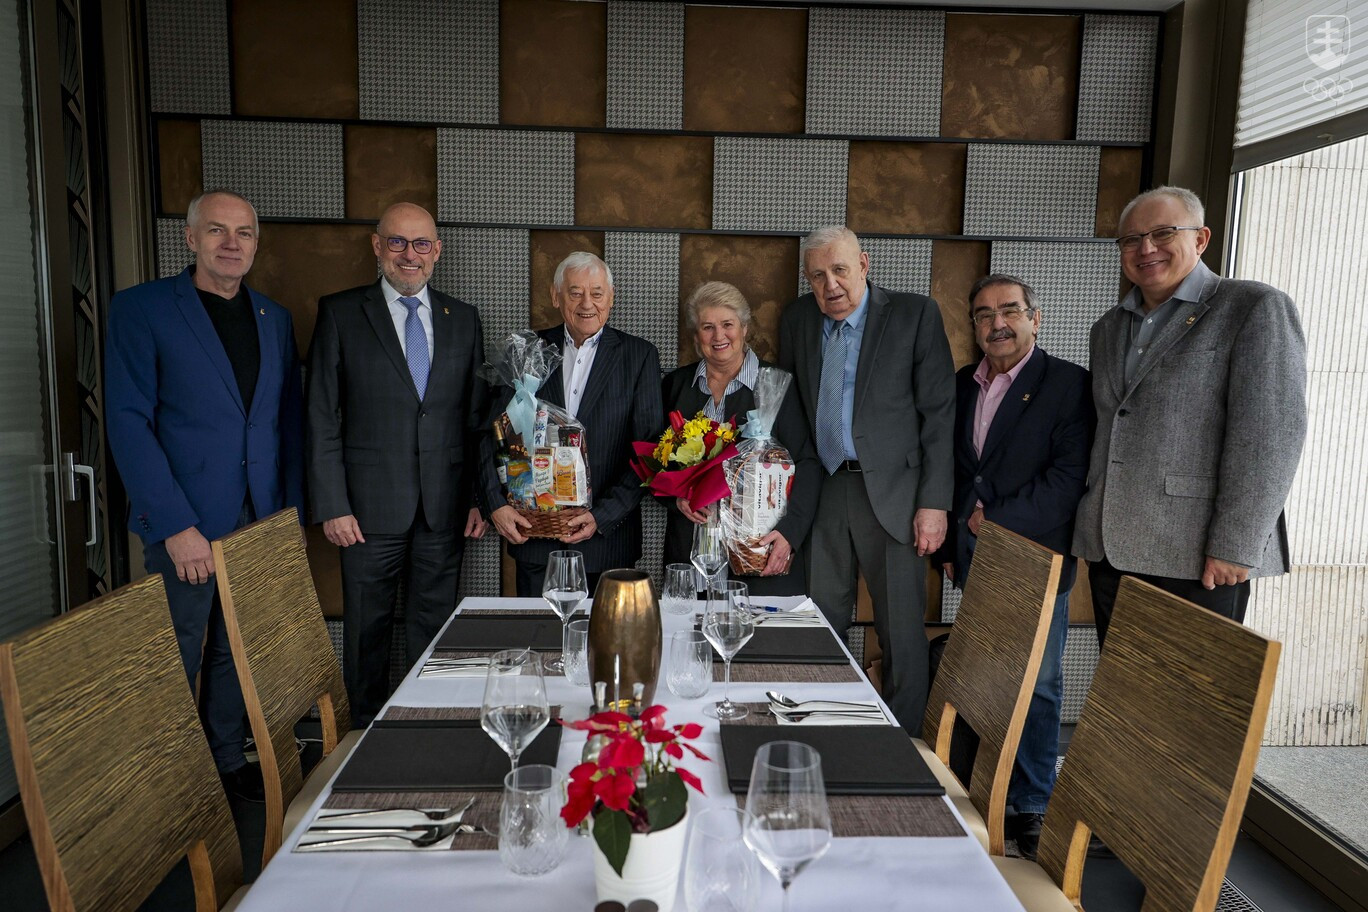 Na spoločnej fotografii zľava Jozef Liba, Anton Siekel, jubilanti Jozef Golonka a Agnesa Búřilová s manželom, Vladimír Miller a Ľubomír Souček.